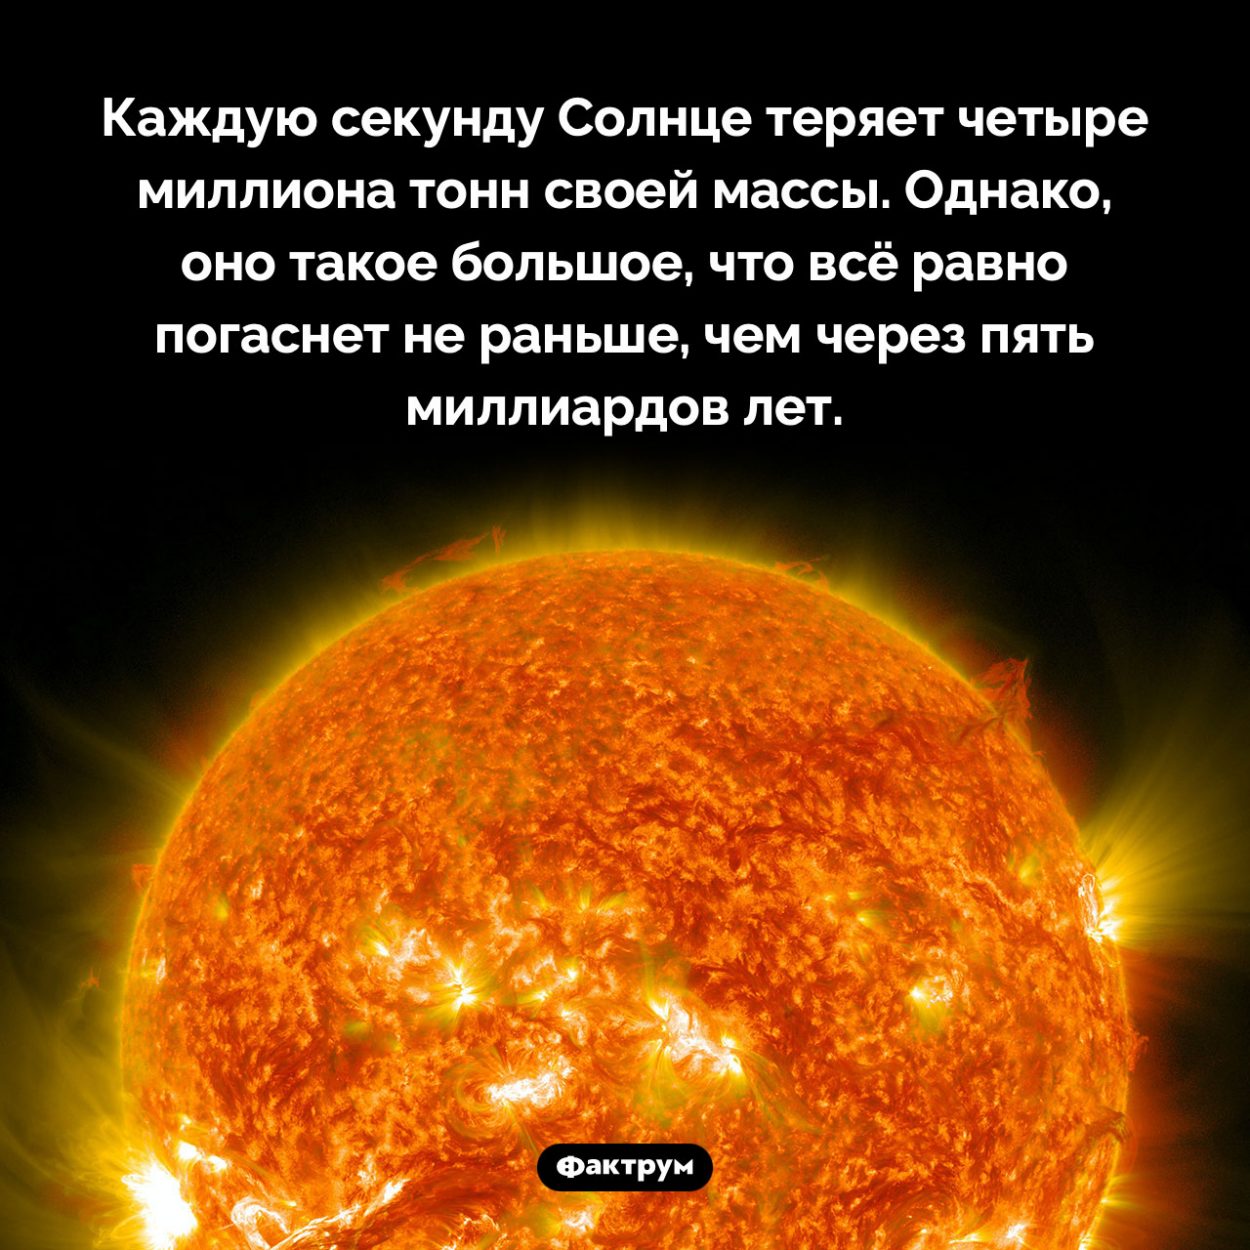 С какой скоростью Солнце теряет массу. Каждую секунду Солнце теряет четыре миллиона тонн своей массы. Однако, оно такое большое, что всё равно погаснет не раньше, чем через пять миллиардов лет.